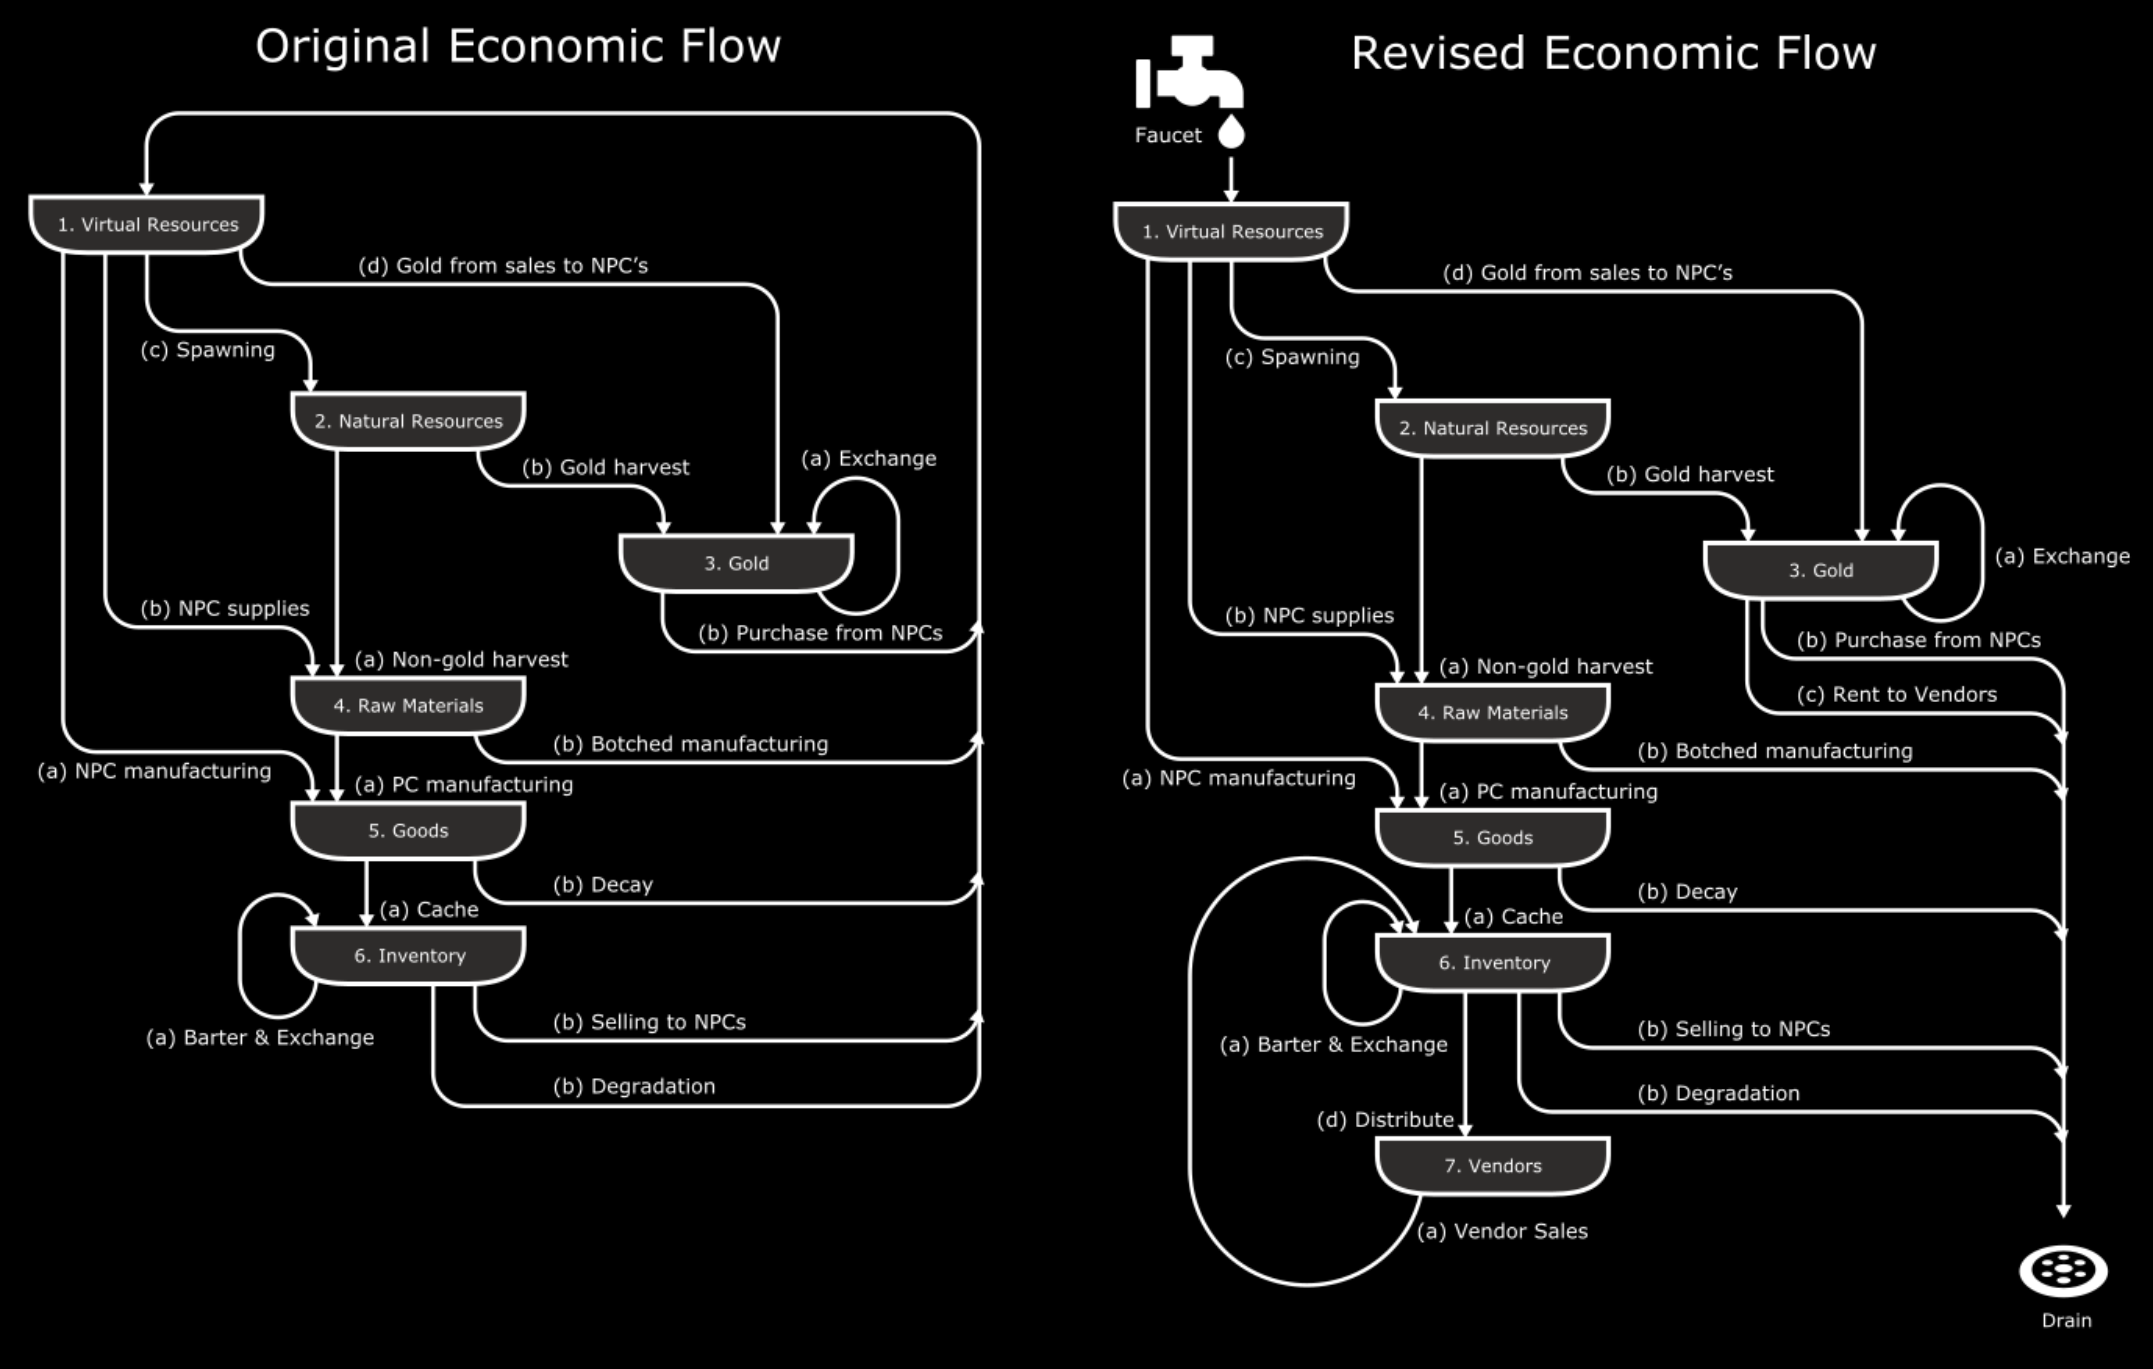 网络创世记的经济模型：原版 vs 改进版